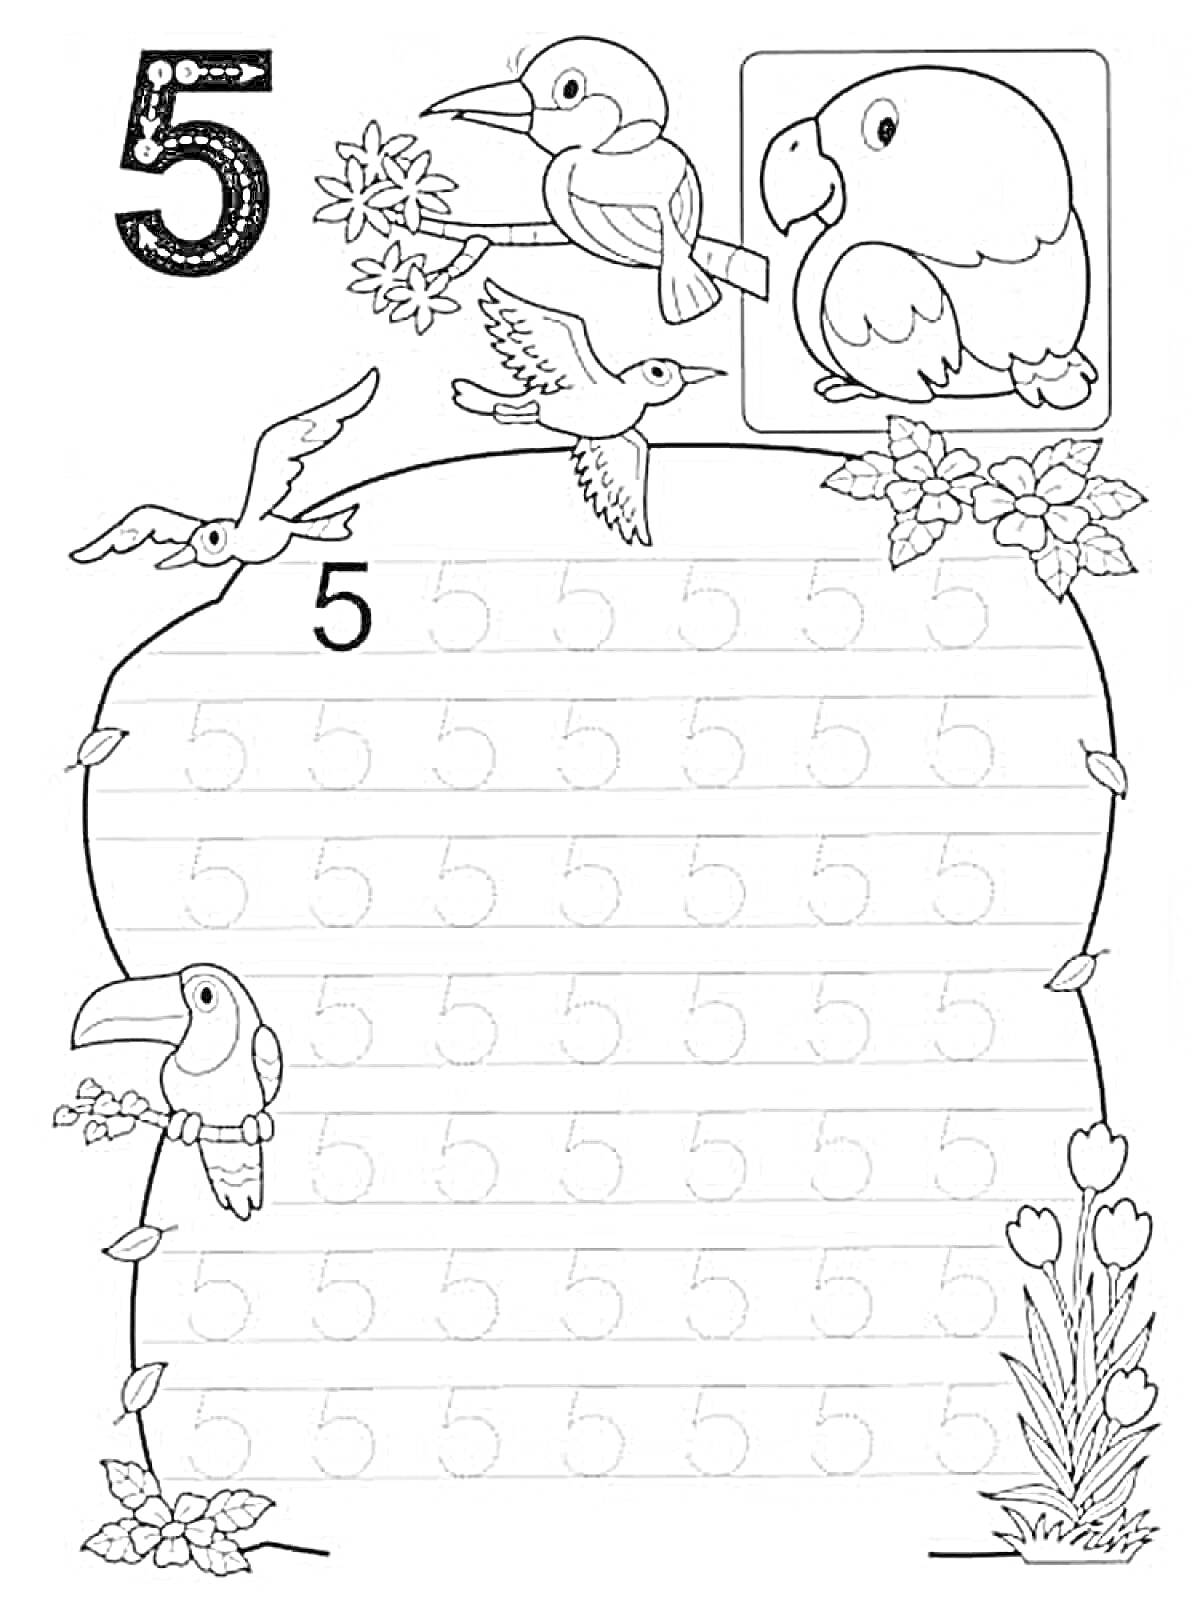 Раскраска Пропись цифры 5 с изображениями птиц и растений